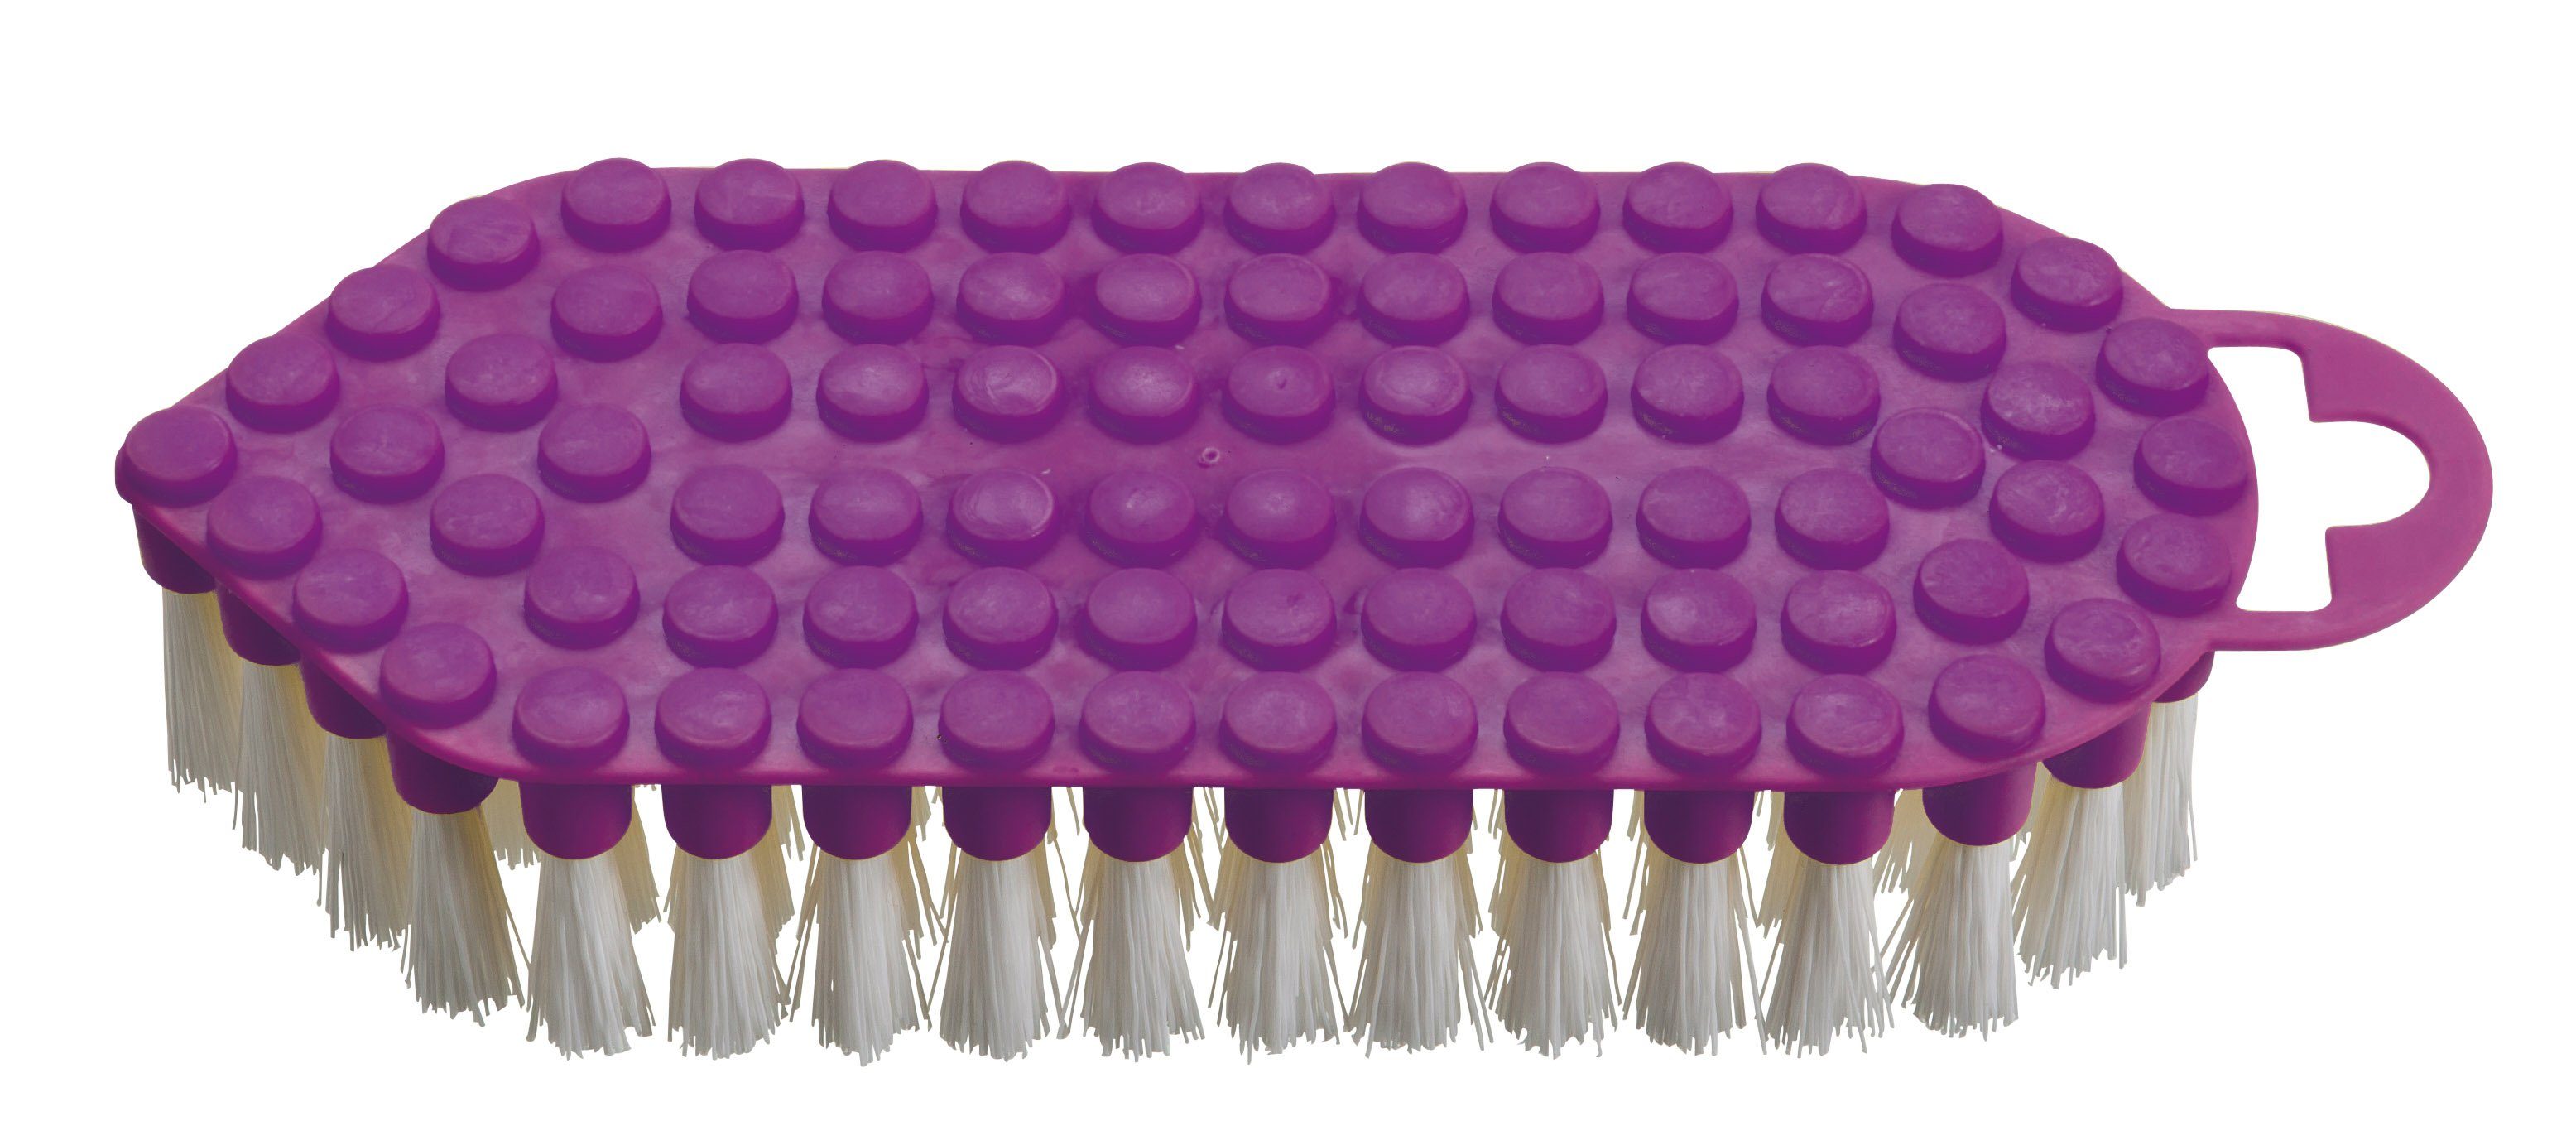 haug bürsten Reinigungsbürste 60320, flexible Scheuerbürste in lila, harte Borsten, dünner Korpus, aus PP – Made in Germany